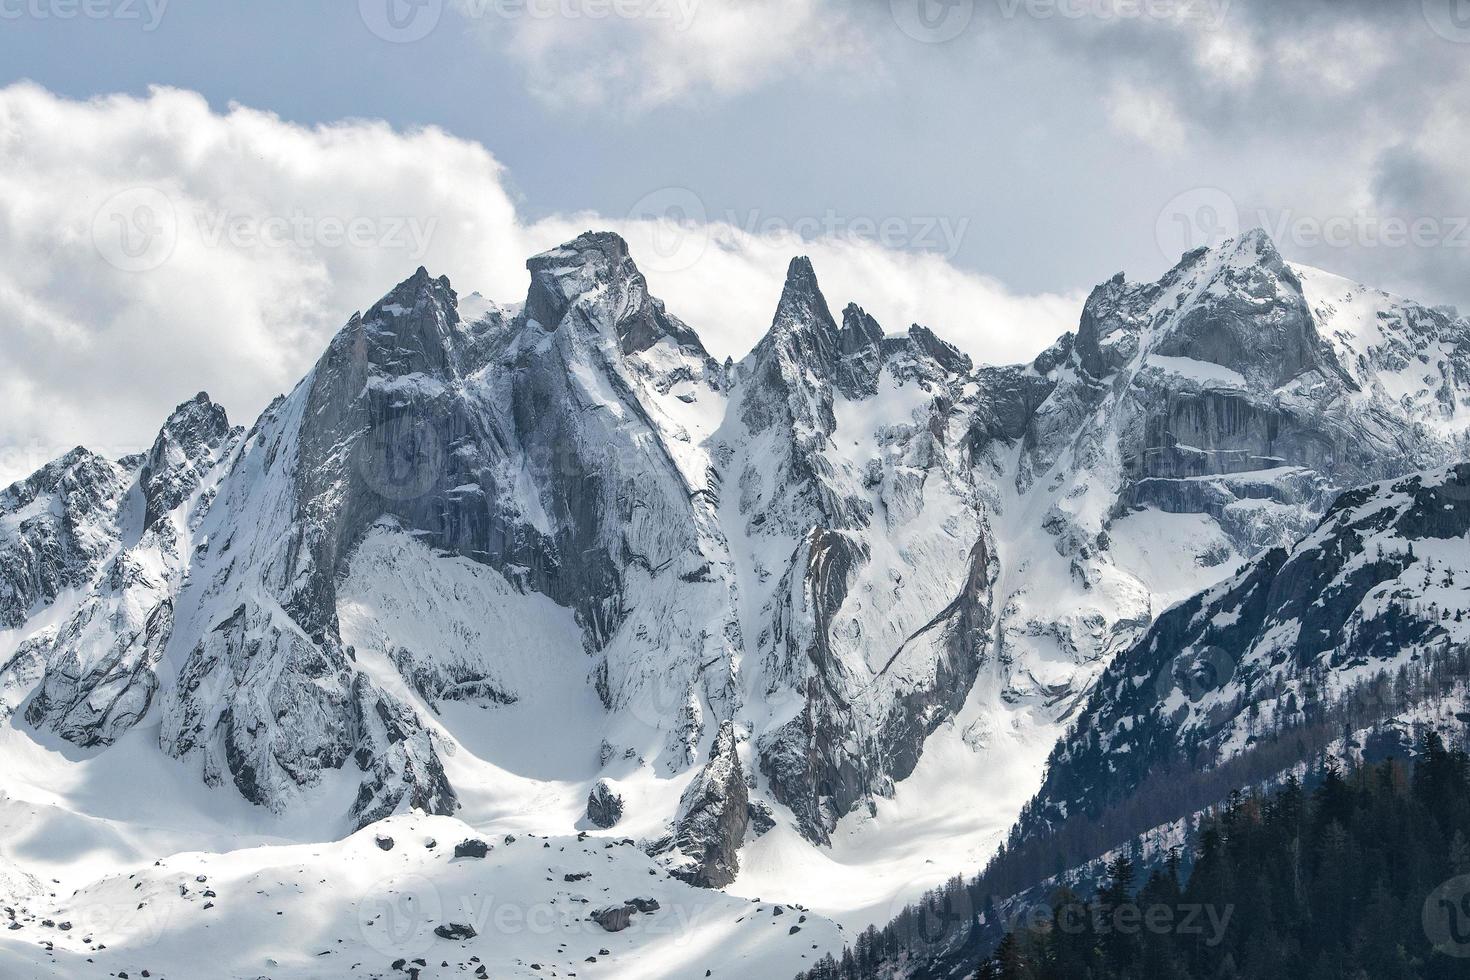 montanhas de granito com neve foto